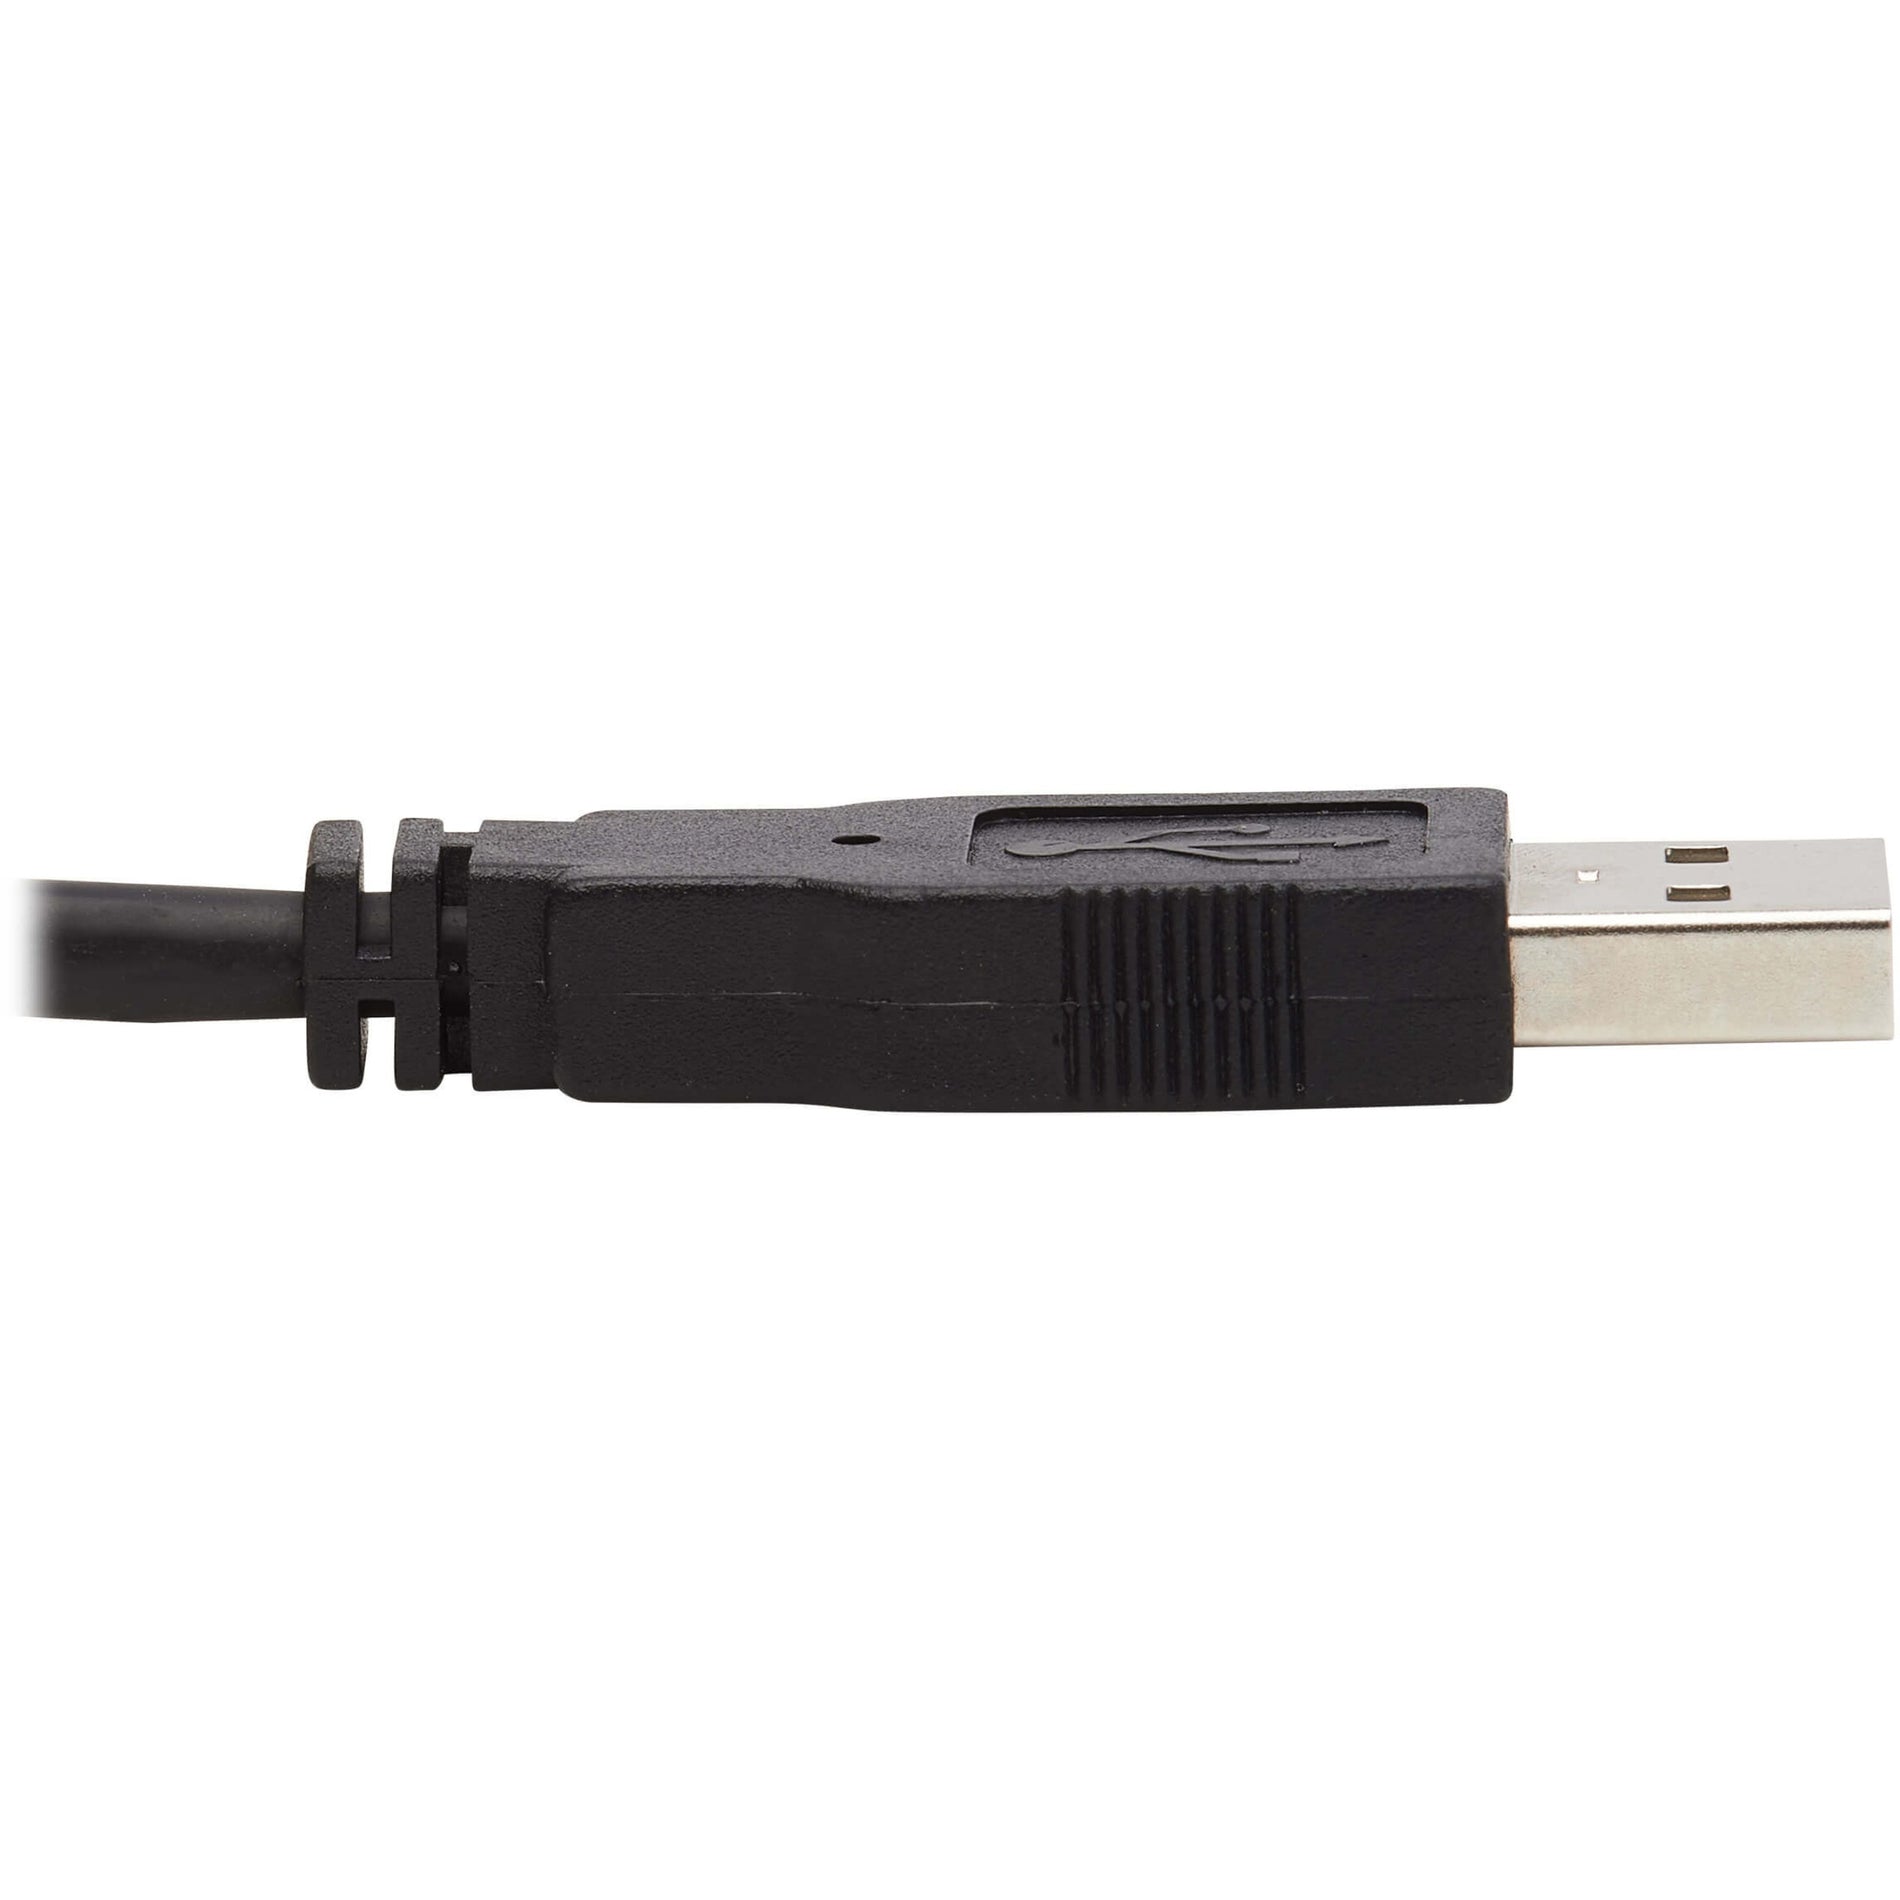 Tripp Lite: トリップライト P783-006-DPU: P783-006-DPU KVM Cable: KVM ケーブル 4K: 4K 6ft: 6フィート DisplayPort: DisplayPort Audio: オーディオ USB: USB HDCP 2.2: HDCP 2.2